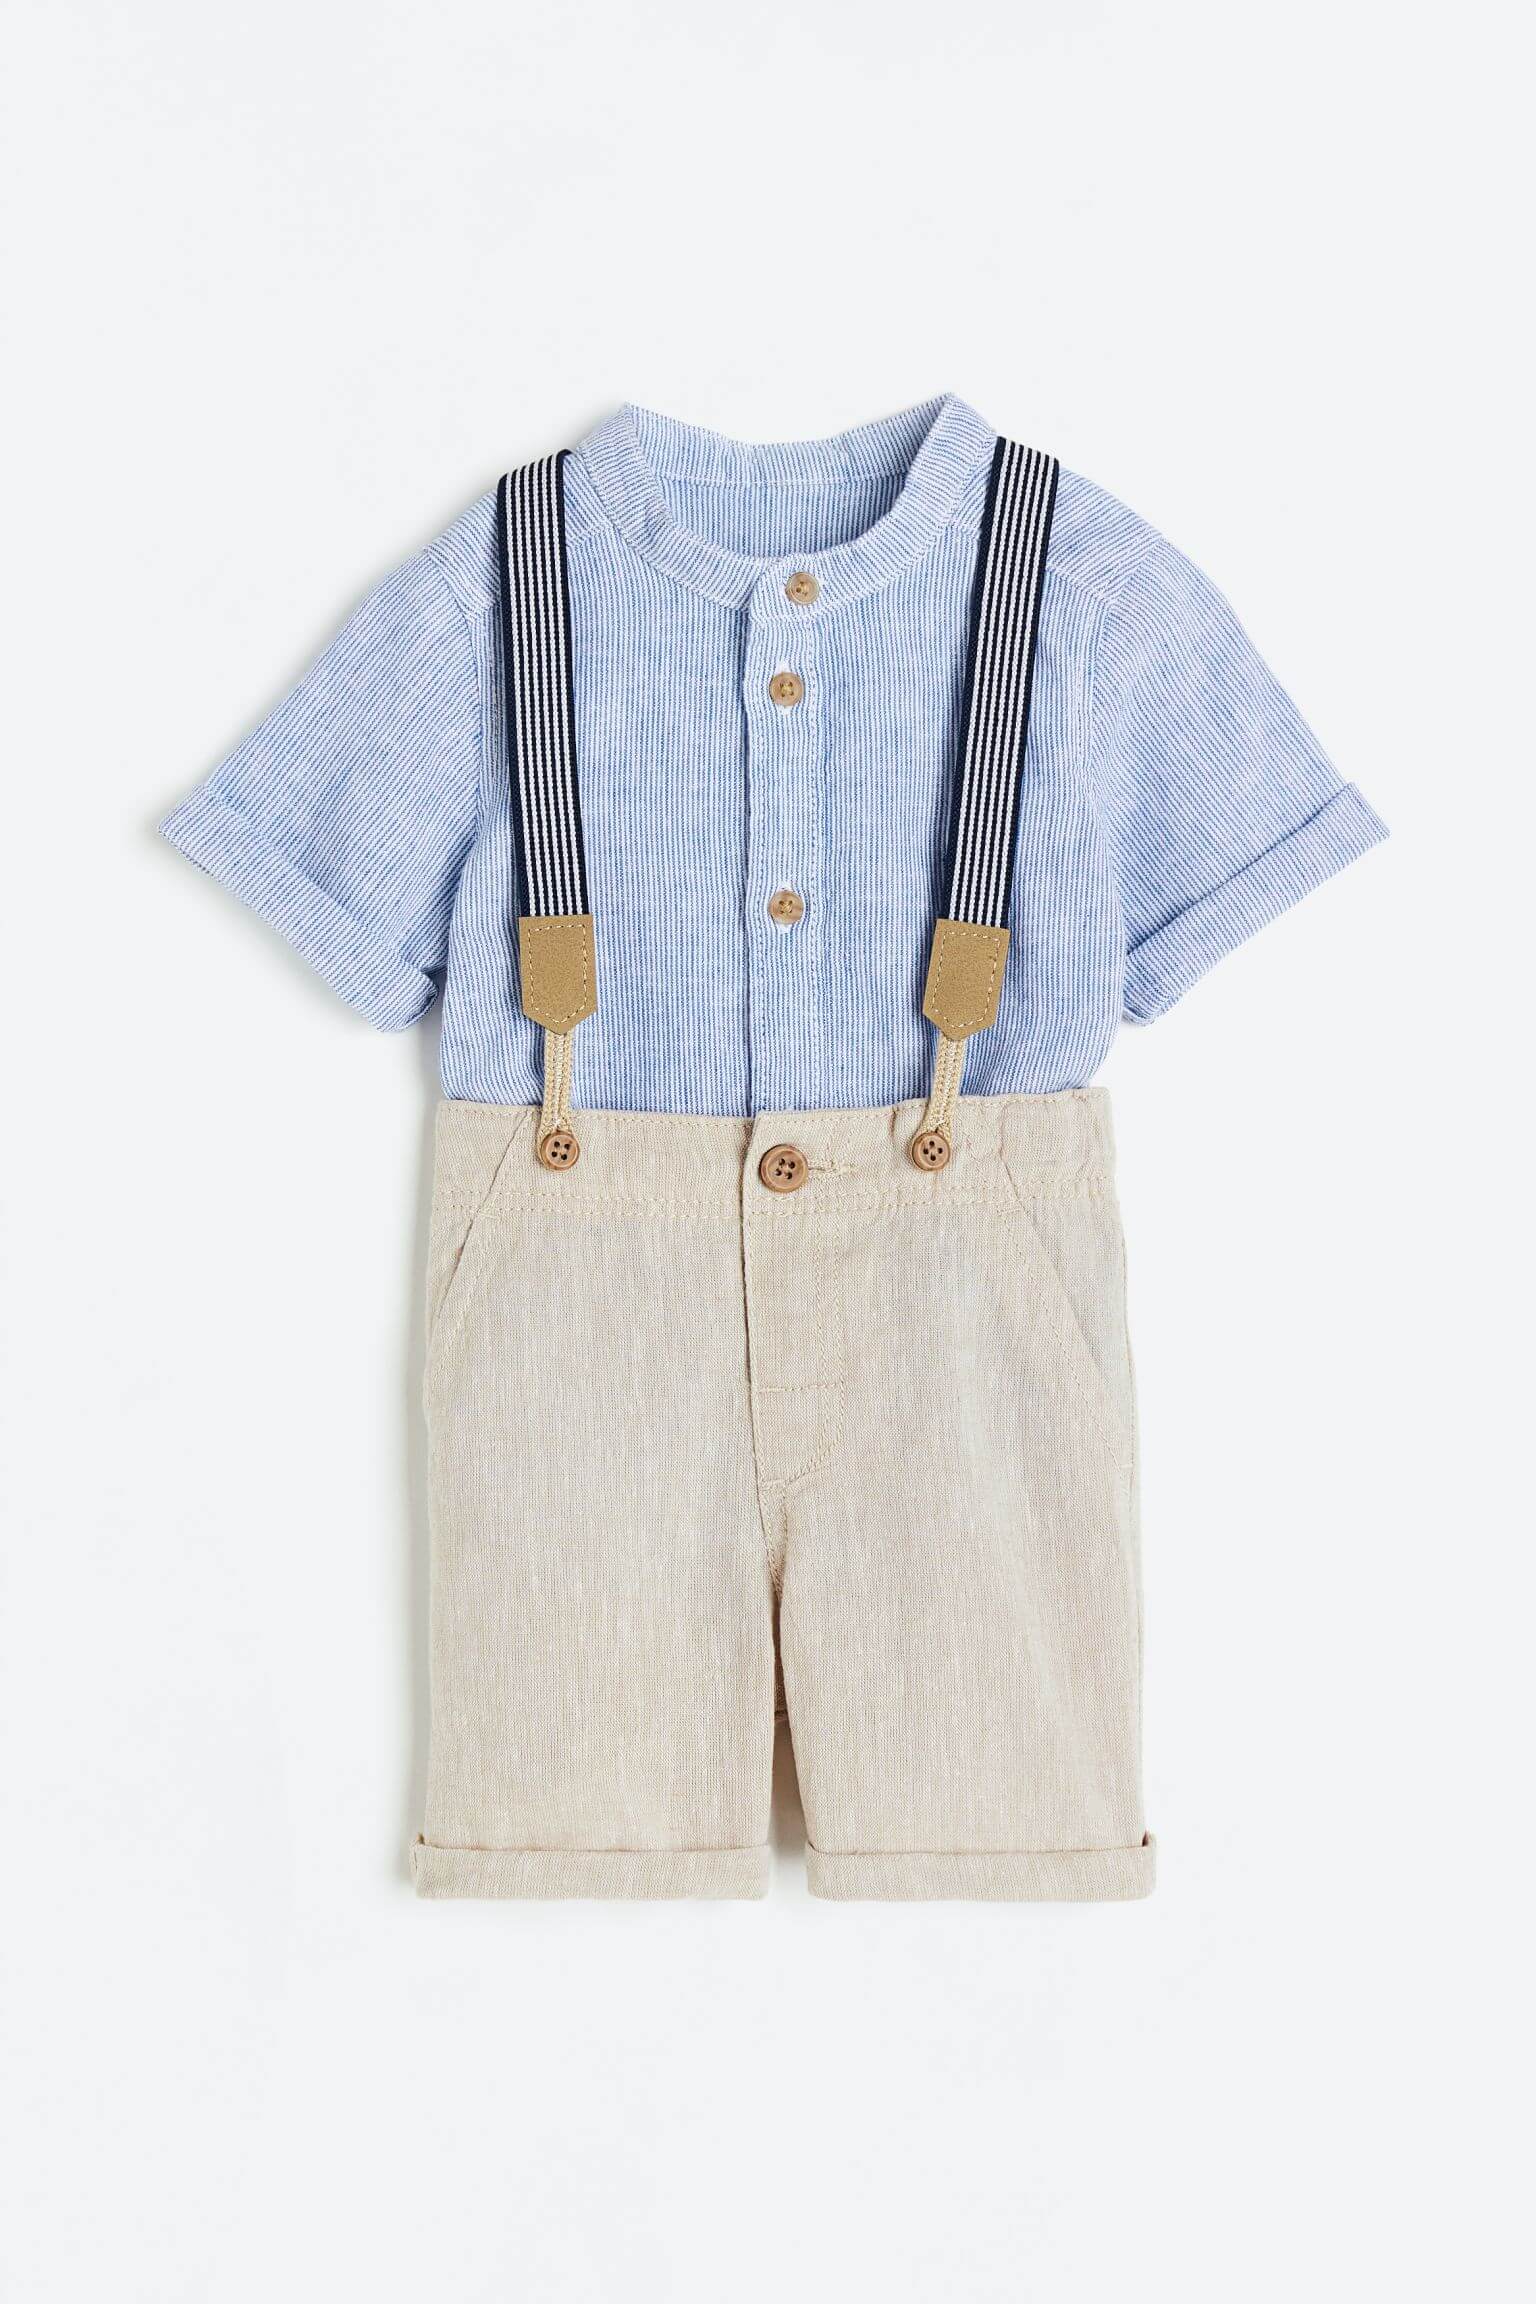 Комплект детской одежды рубашка и шорты H&M With Suspenders, 2 предмета, голубой/светло-бежевый